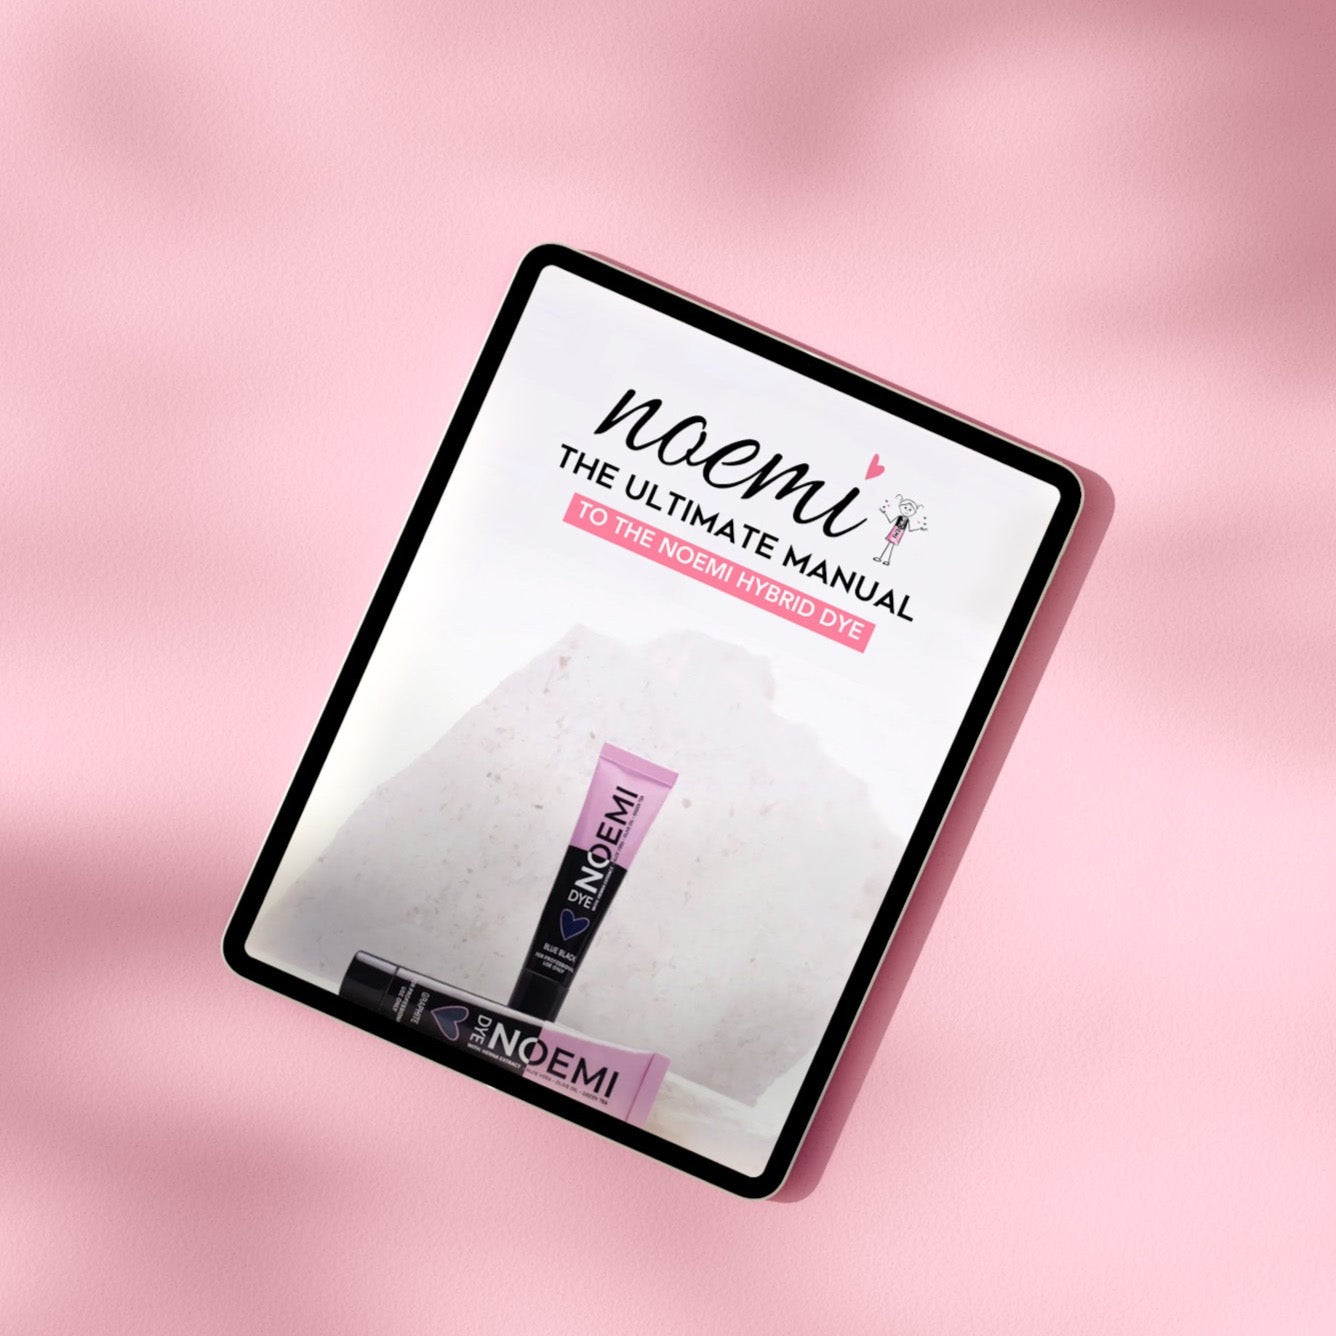 Noemi - Ultimate Noemi Brow Dye Manual (EBOOK)